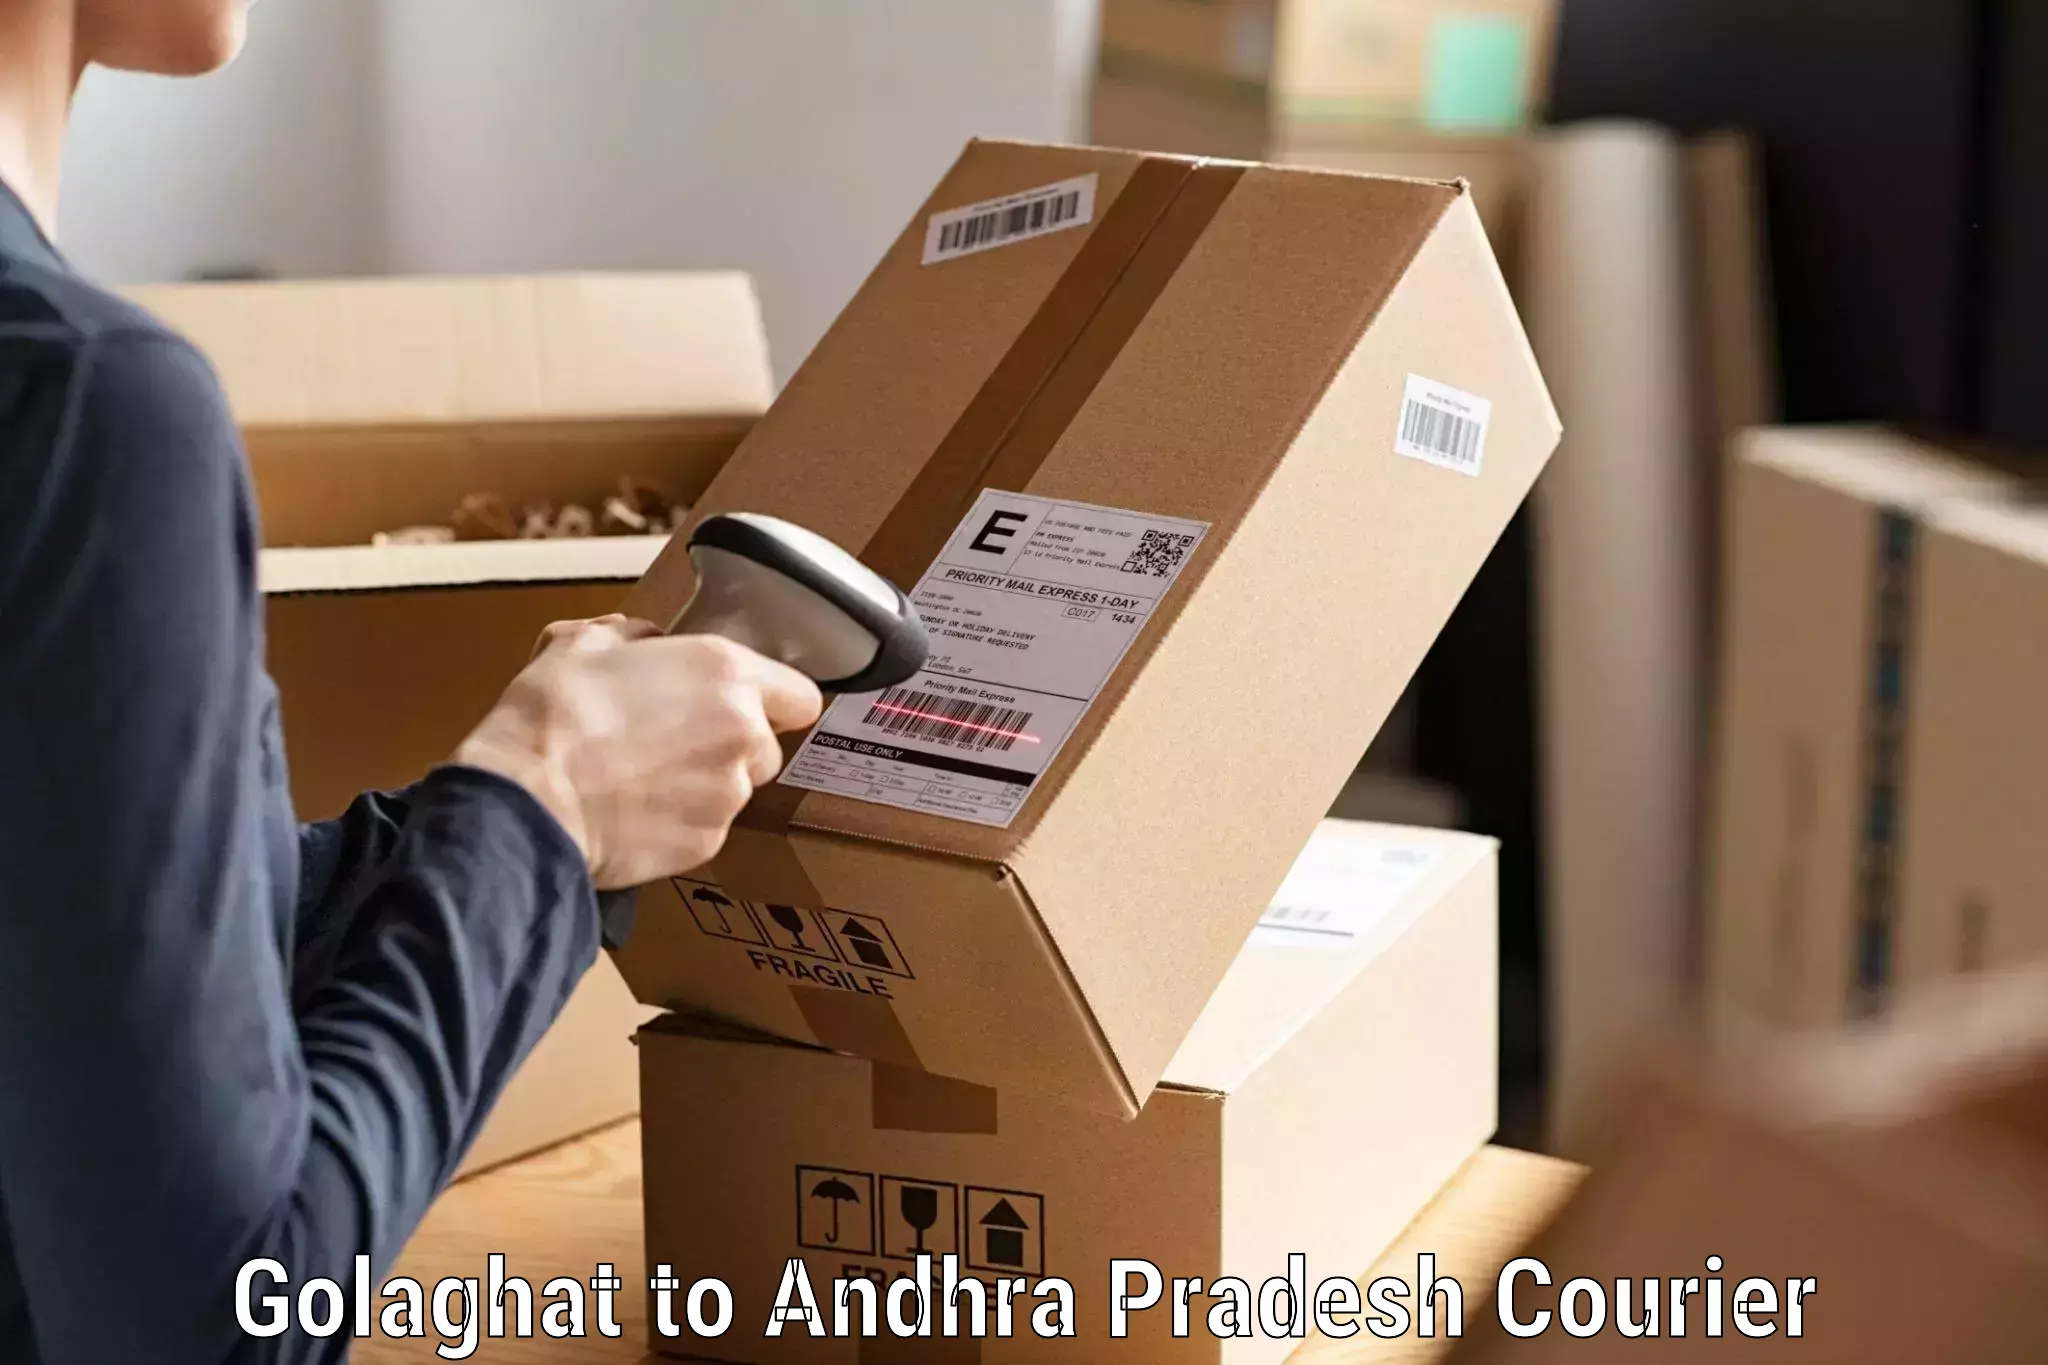 Reliable package handling Golaghat to Jinnuru